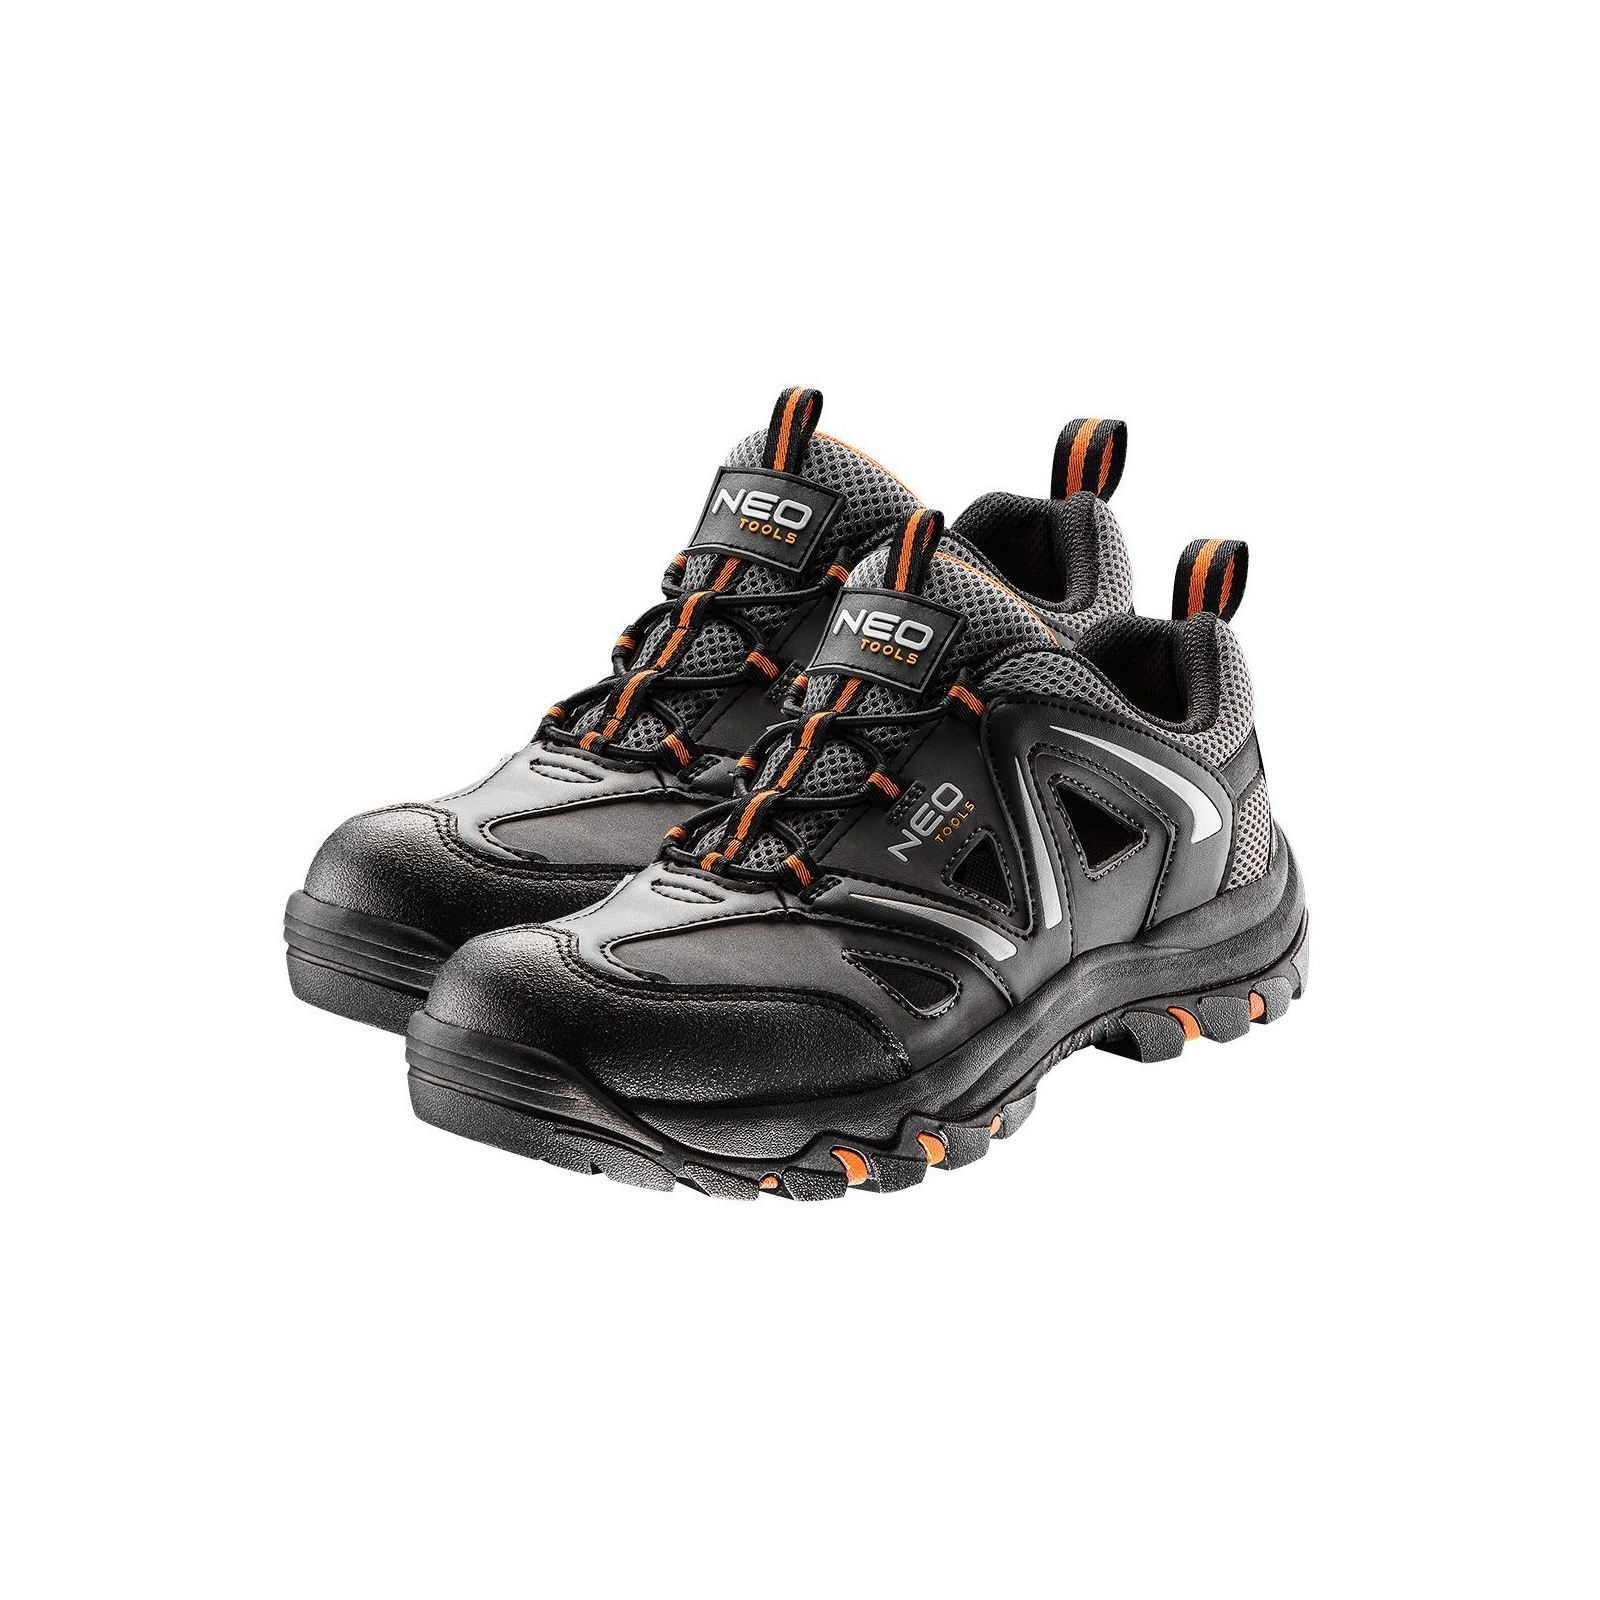 Ботинки рабочие Neo Tools кроссовки дышащие, подошва EVA, класс защиты OB, SRA, р.47 (82-728)